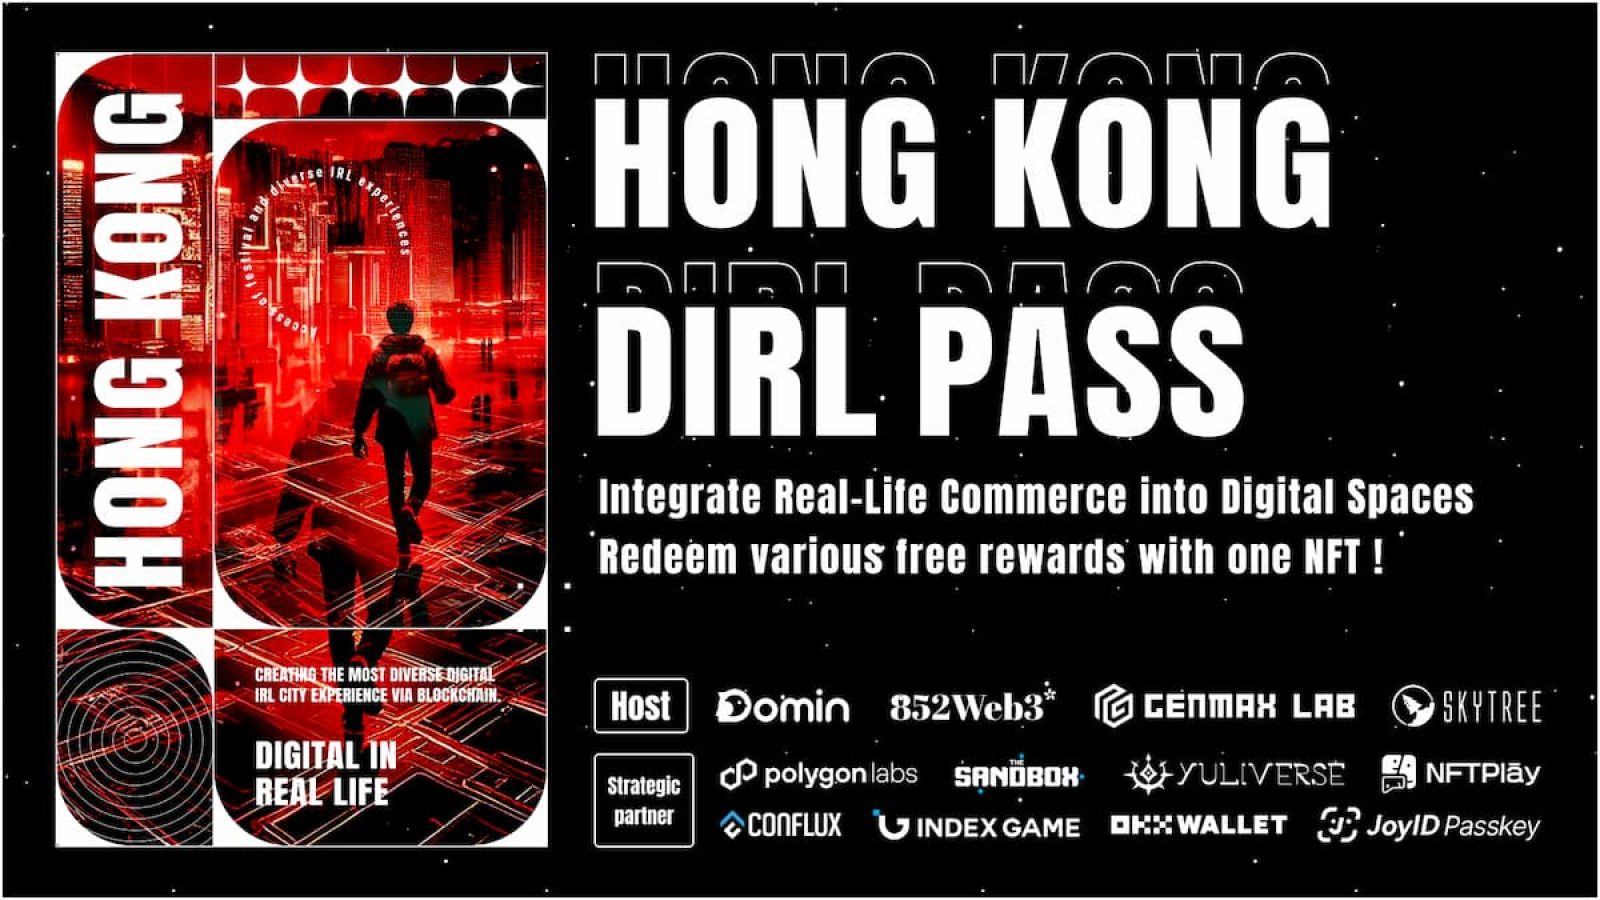 快來領取 HONG KONG DIRL PASS！享受超過15家品牌優惠